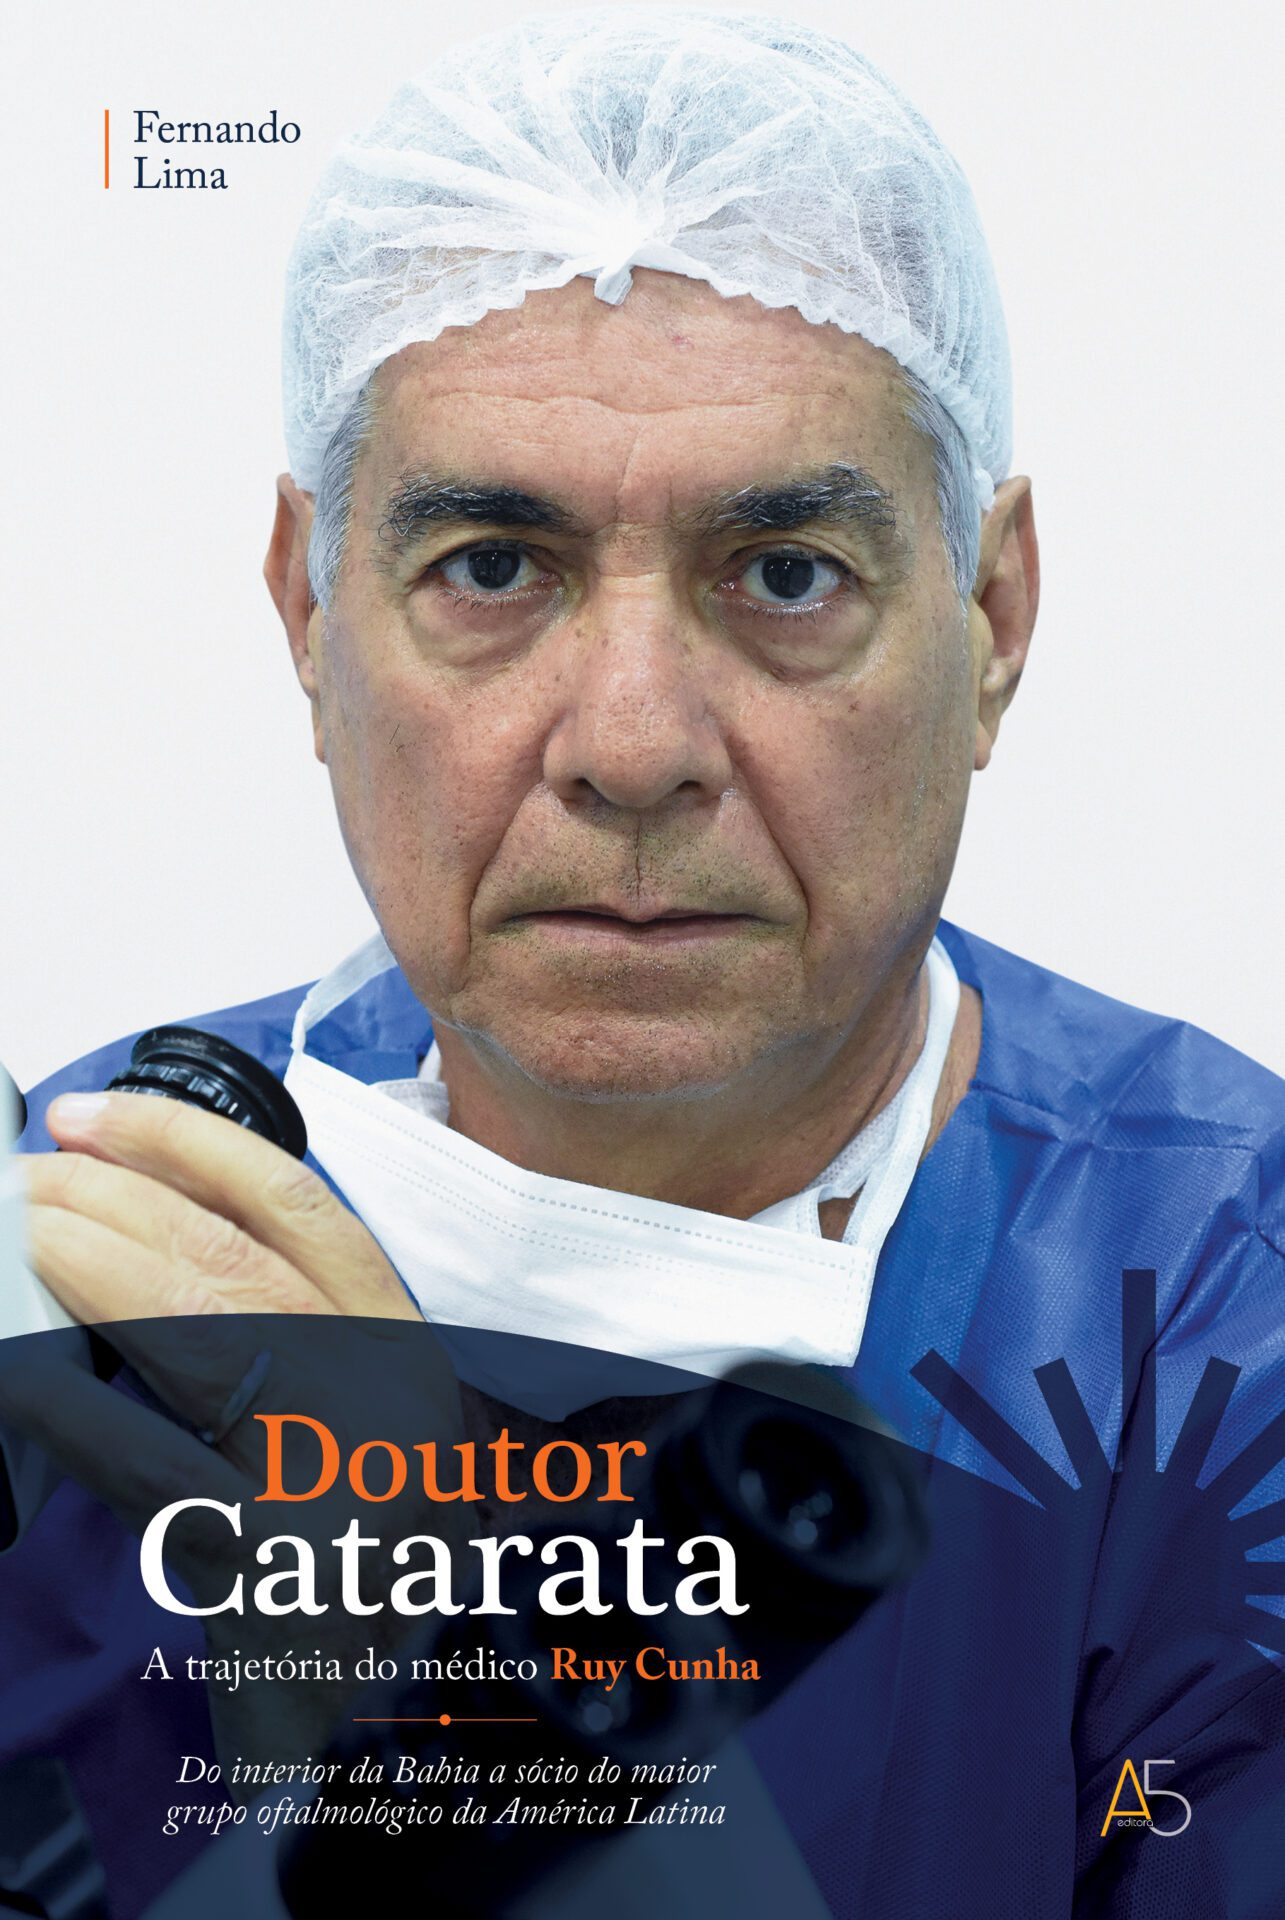 Médico Ruy Cunha terá biografia lançada em congresso internacional de oftalmologia realizado em Salvador